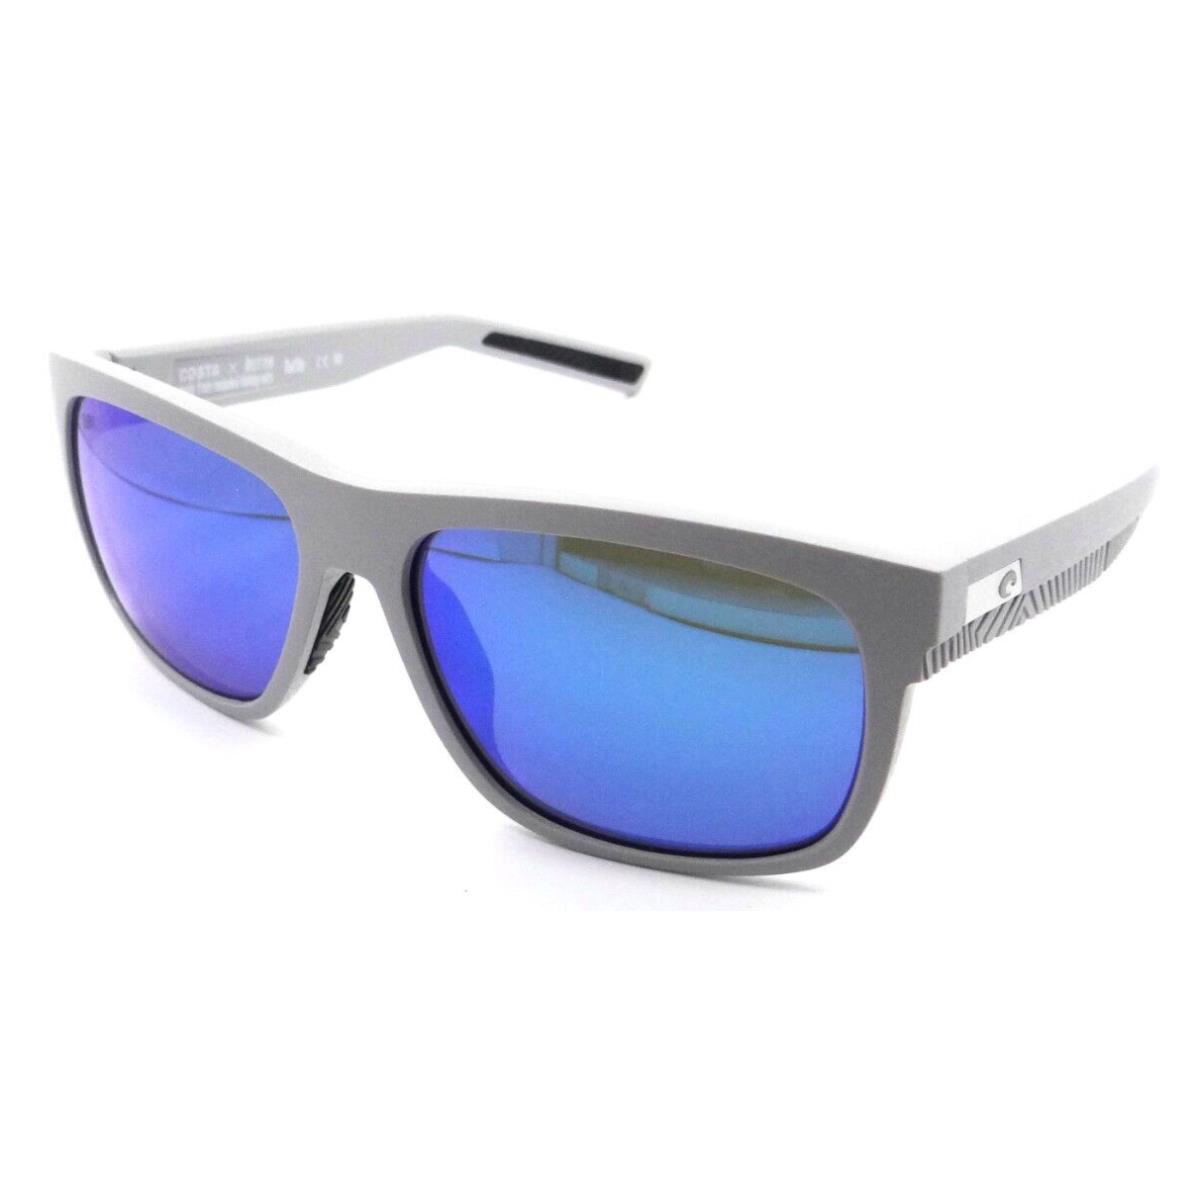 Costa Del Mar Sunglasses Baffin 58-16-140 Net Light Gray / Blue Mirror 580G